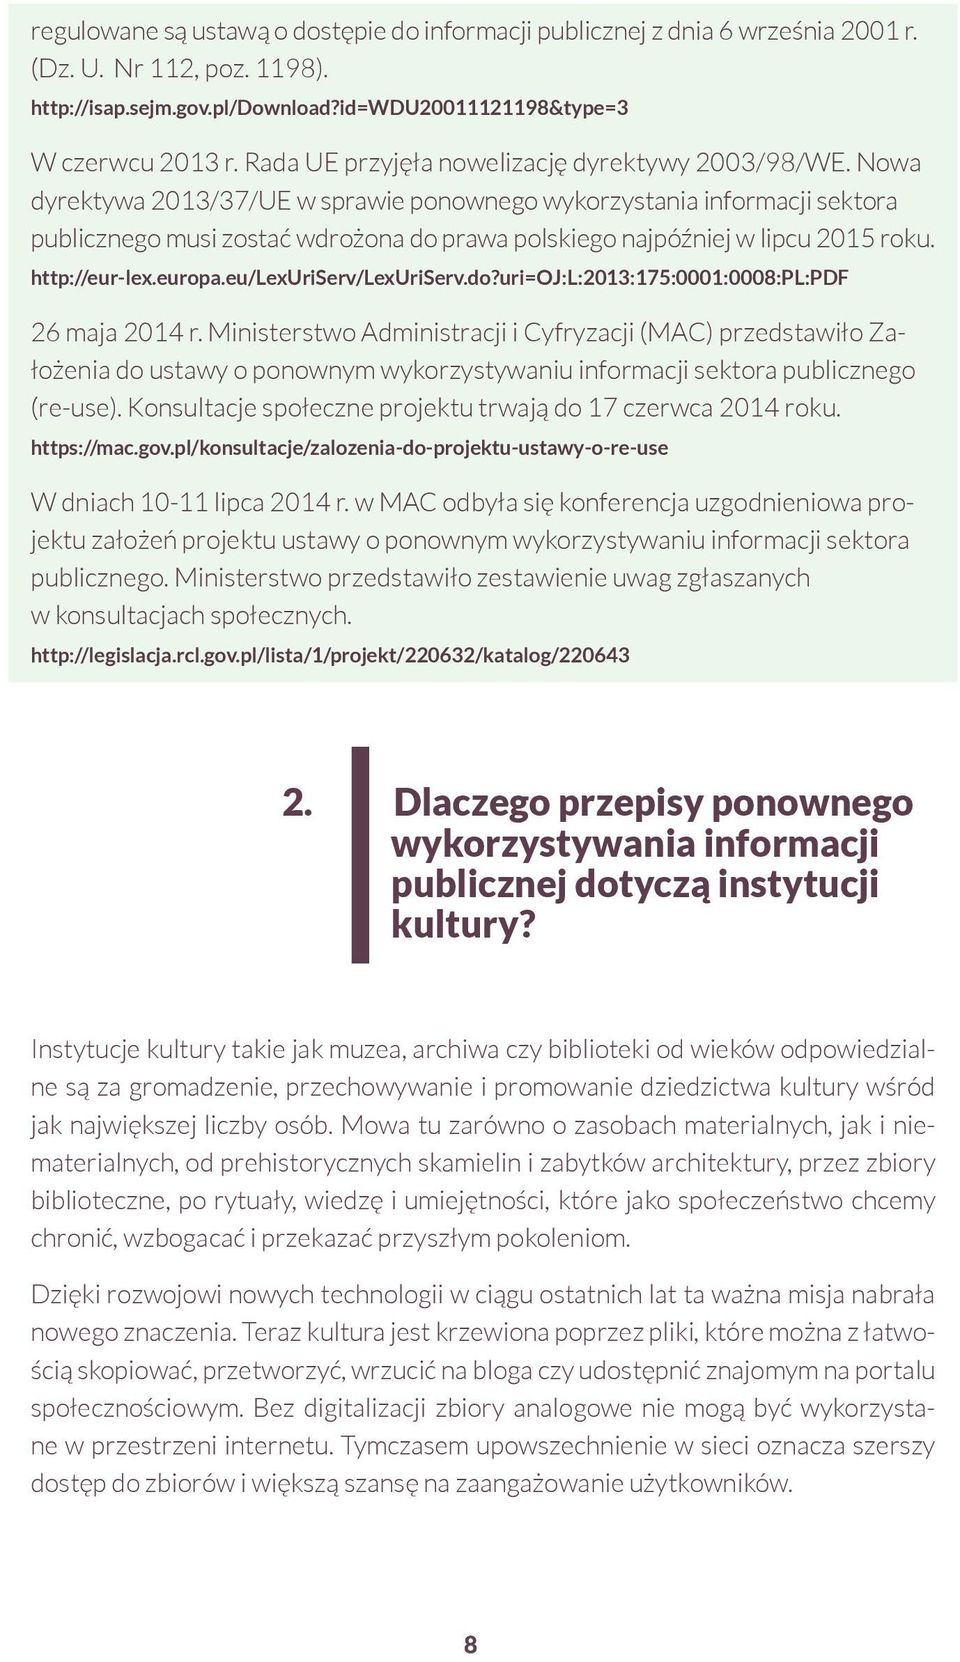 Nowa dyrektywa 2013/37/UE w sprawie ponownego wykorzystania informacji sektora publicznego musi zostać wdrożona do prawa polskiego najpóźniej w lipcu 2015 roku. http://eur-lex.europa.